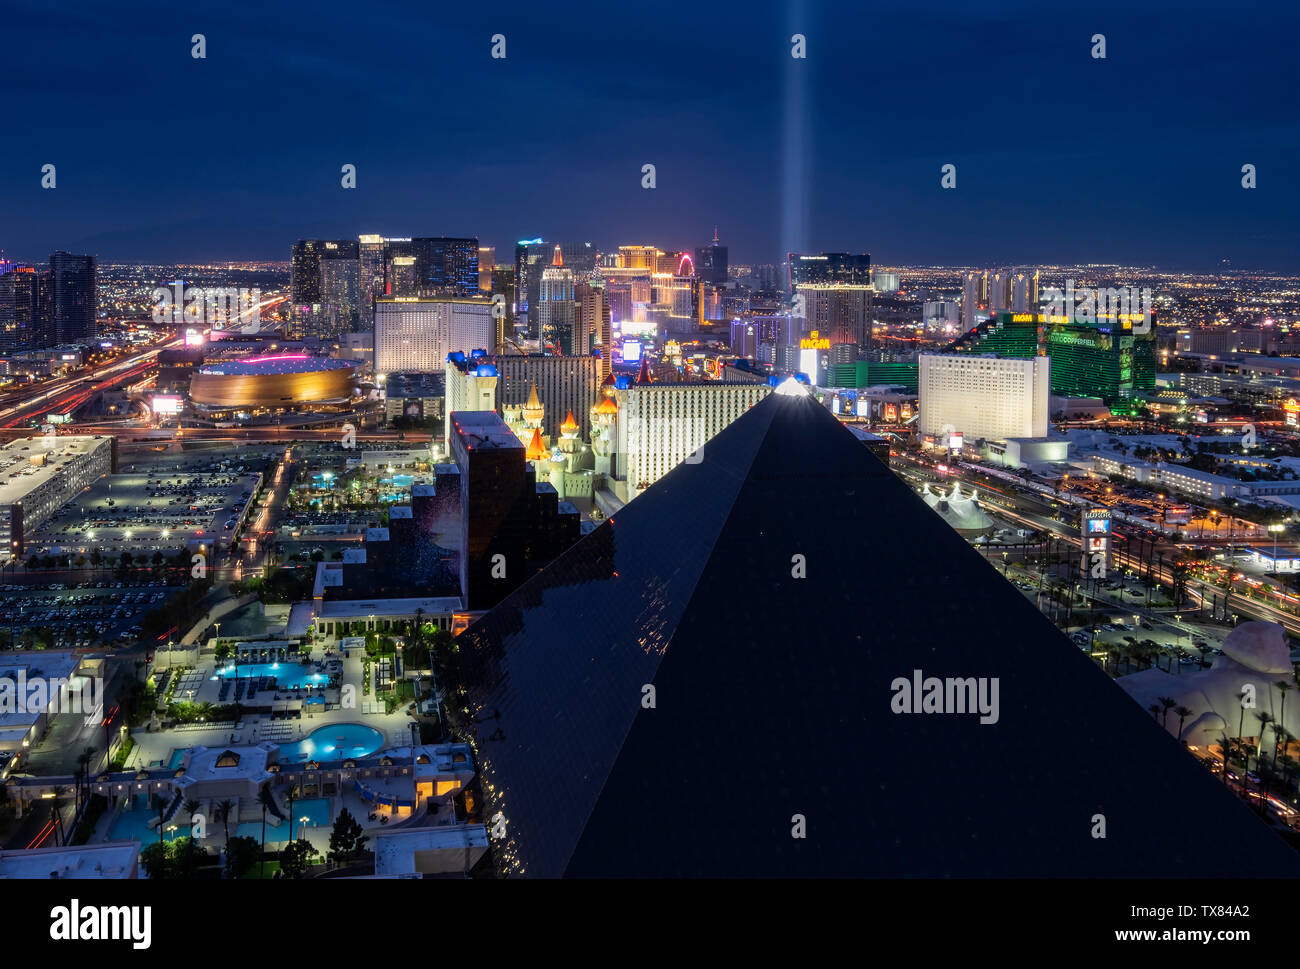 Elevated view of the Las Vegas Strip area at night, Las Vegas, Nevada, USA Stock Photo